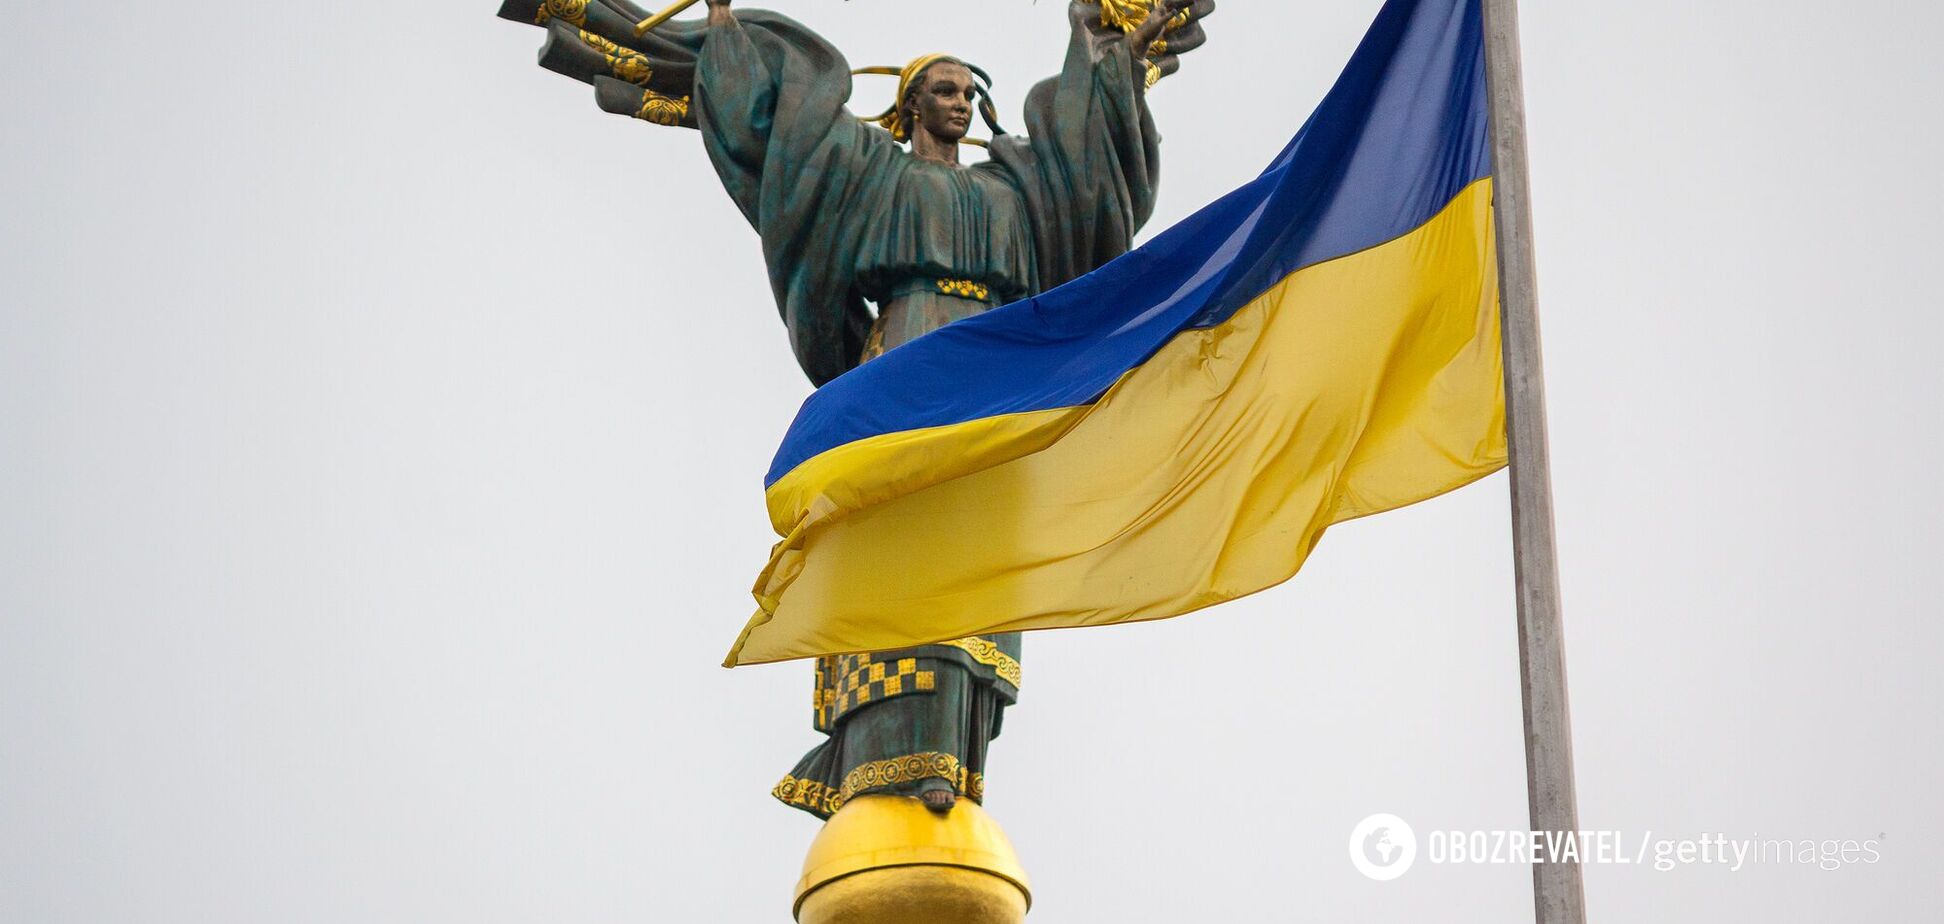 'Ще не вмерла України і Слава і Воля'. При каких исторических событиях было написано стихотворение